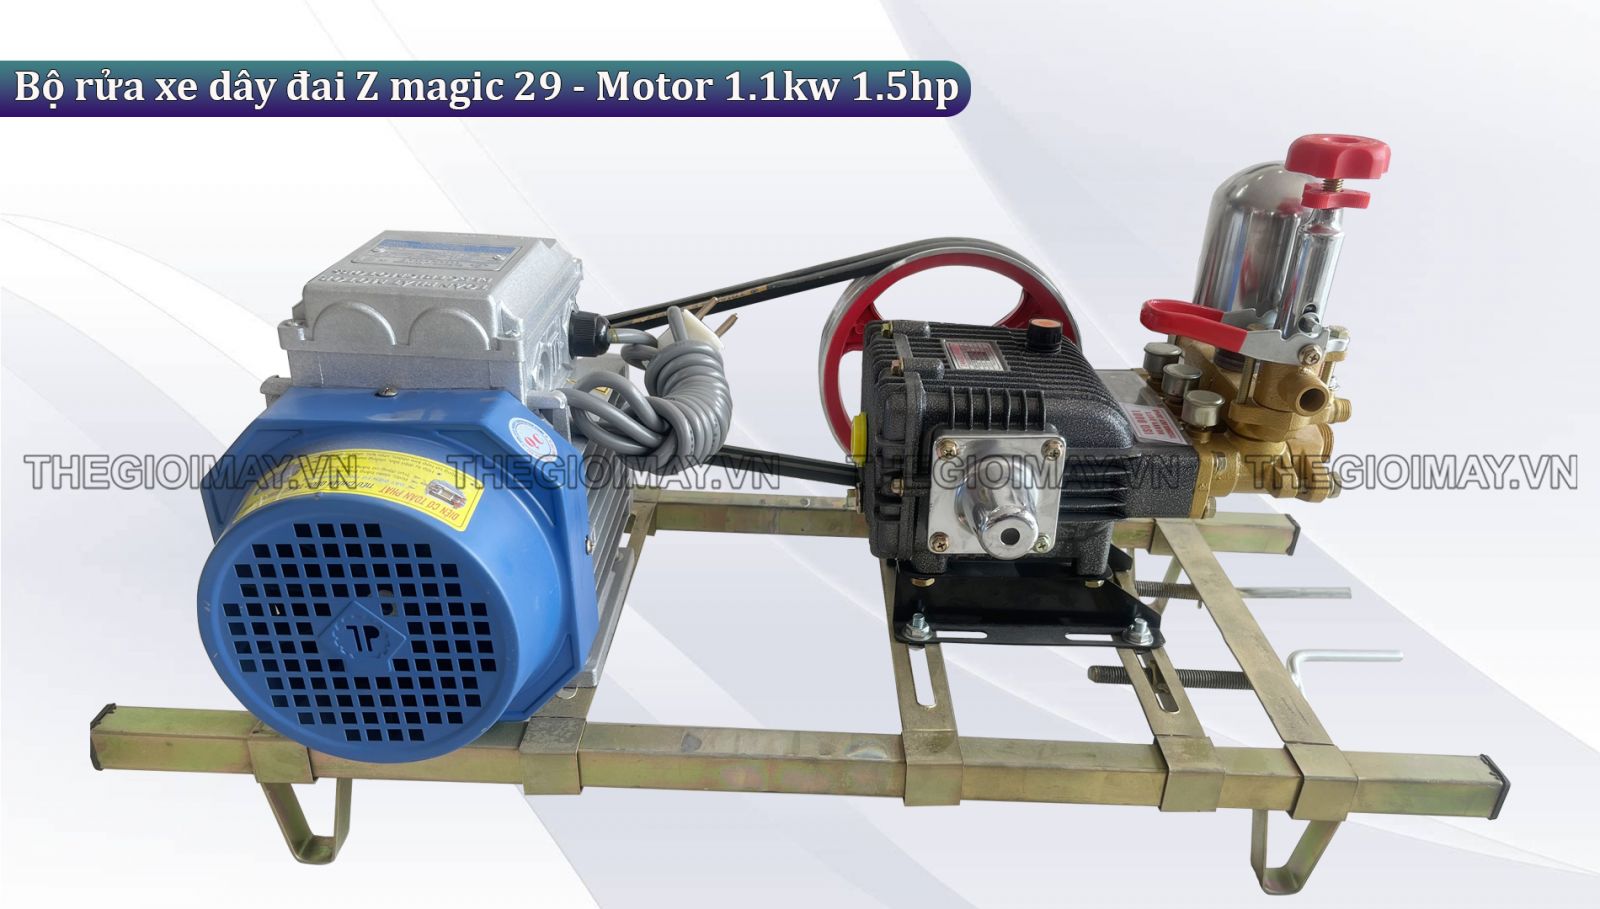 Ứng dụng của bộ rửa xe dây đai Z magic 29 - Motor 1.1kw 1.5hp​ trong cuộc sống hằng ngày